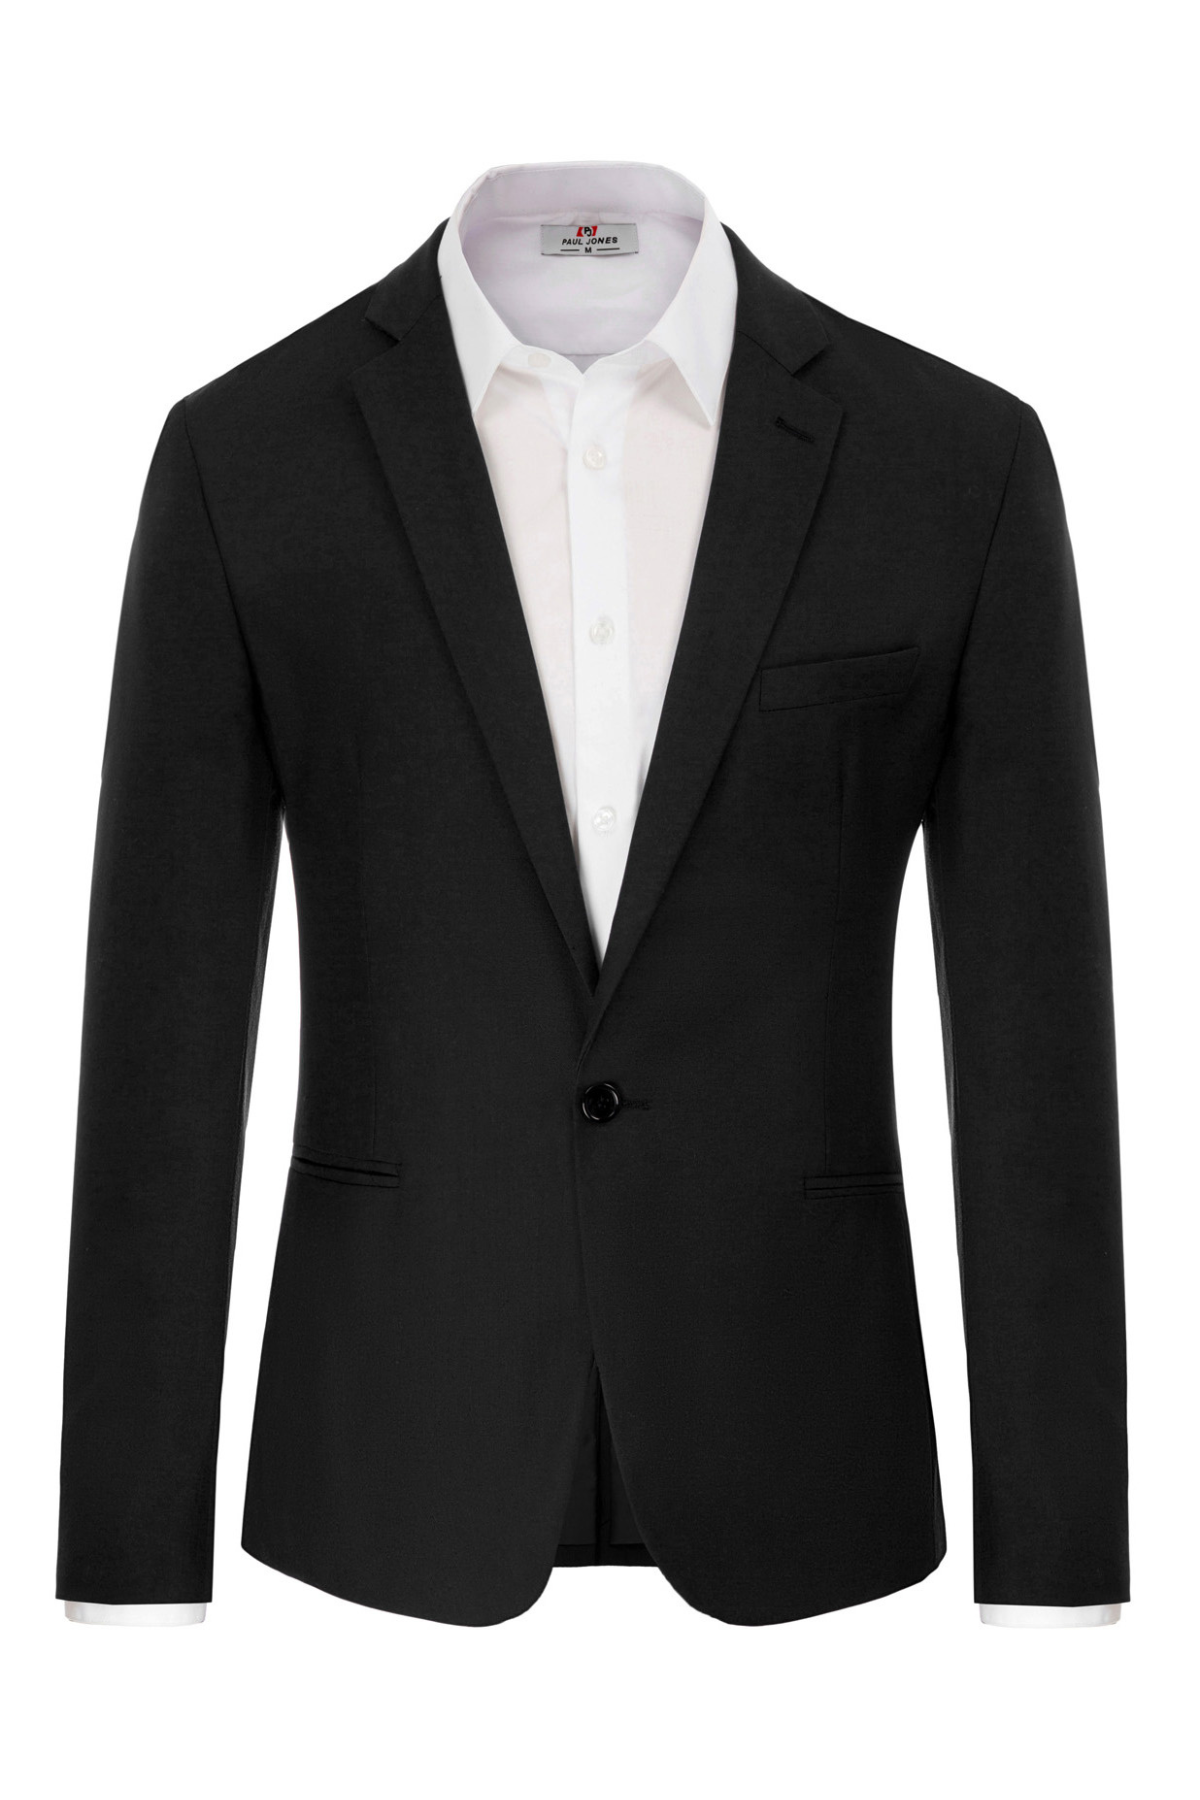 Express Slim Plaid Knit Suit Jacket Multi-Color Men's 42 Short